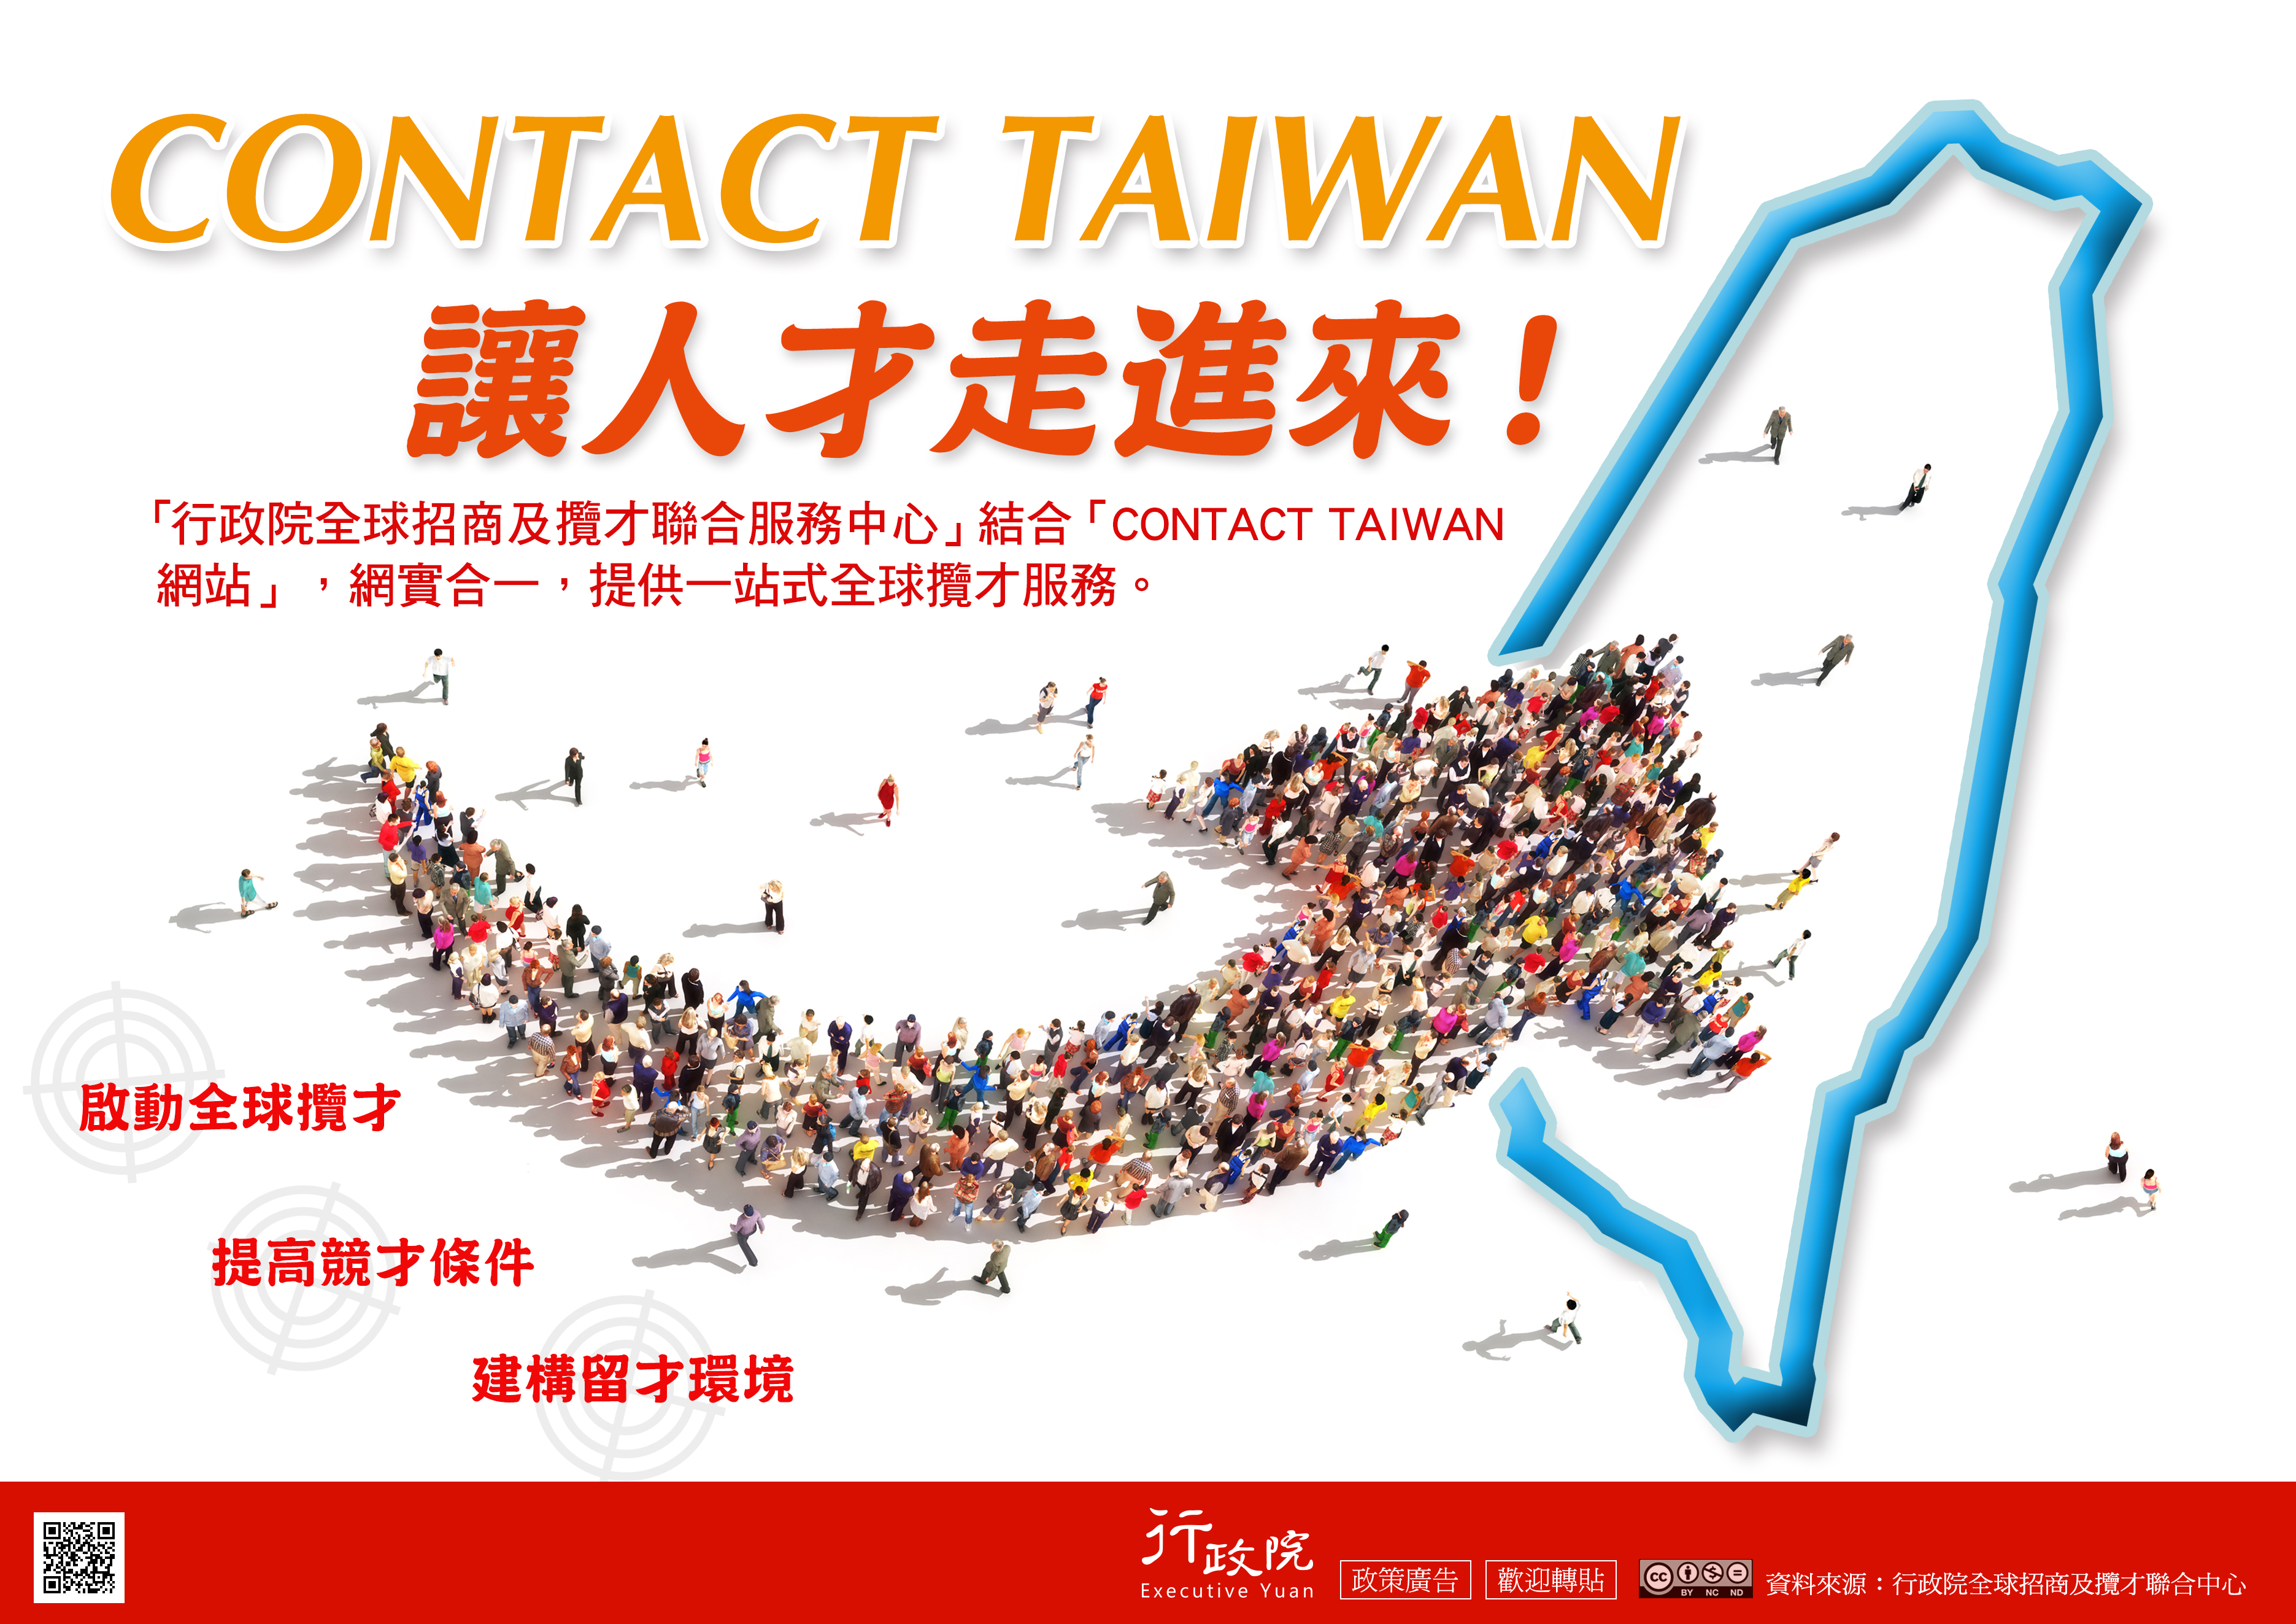 CONTACT TAIWAN 讓人才走進來